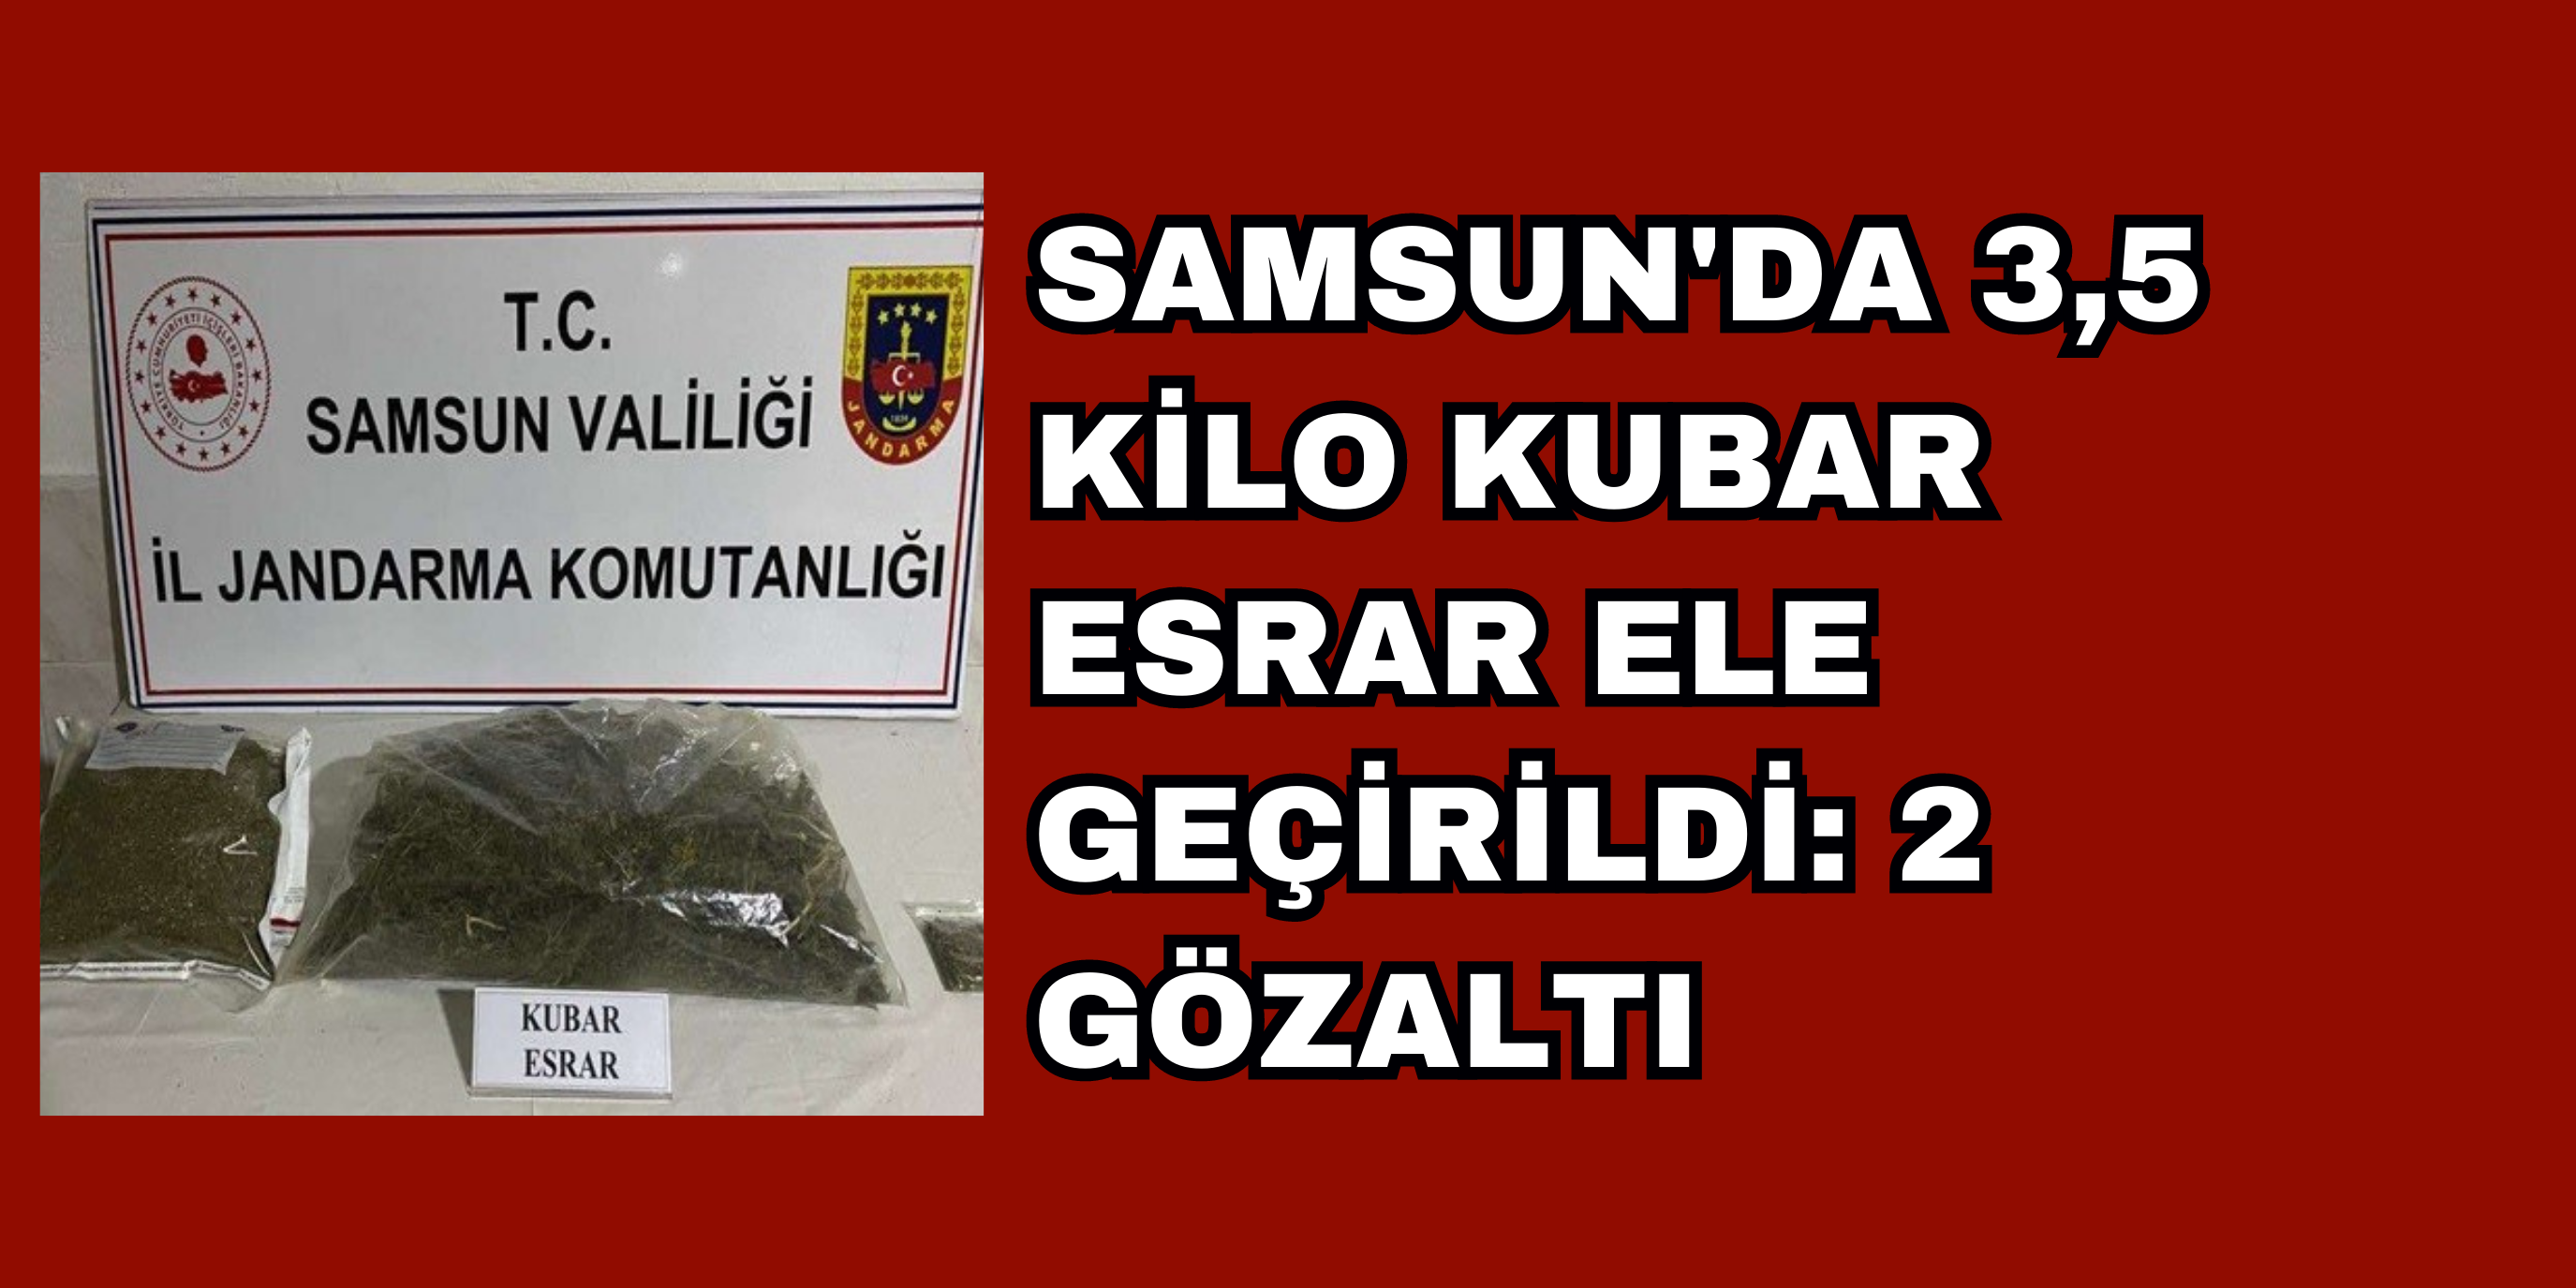 Samsun'da 3,5 Kilo Kubar Esrar Ele Geçirildi: 2 Gözaltı